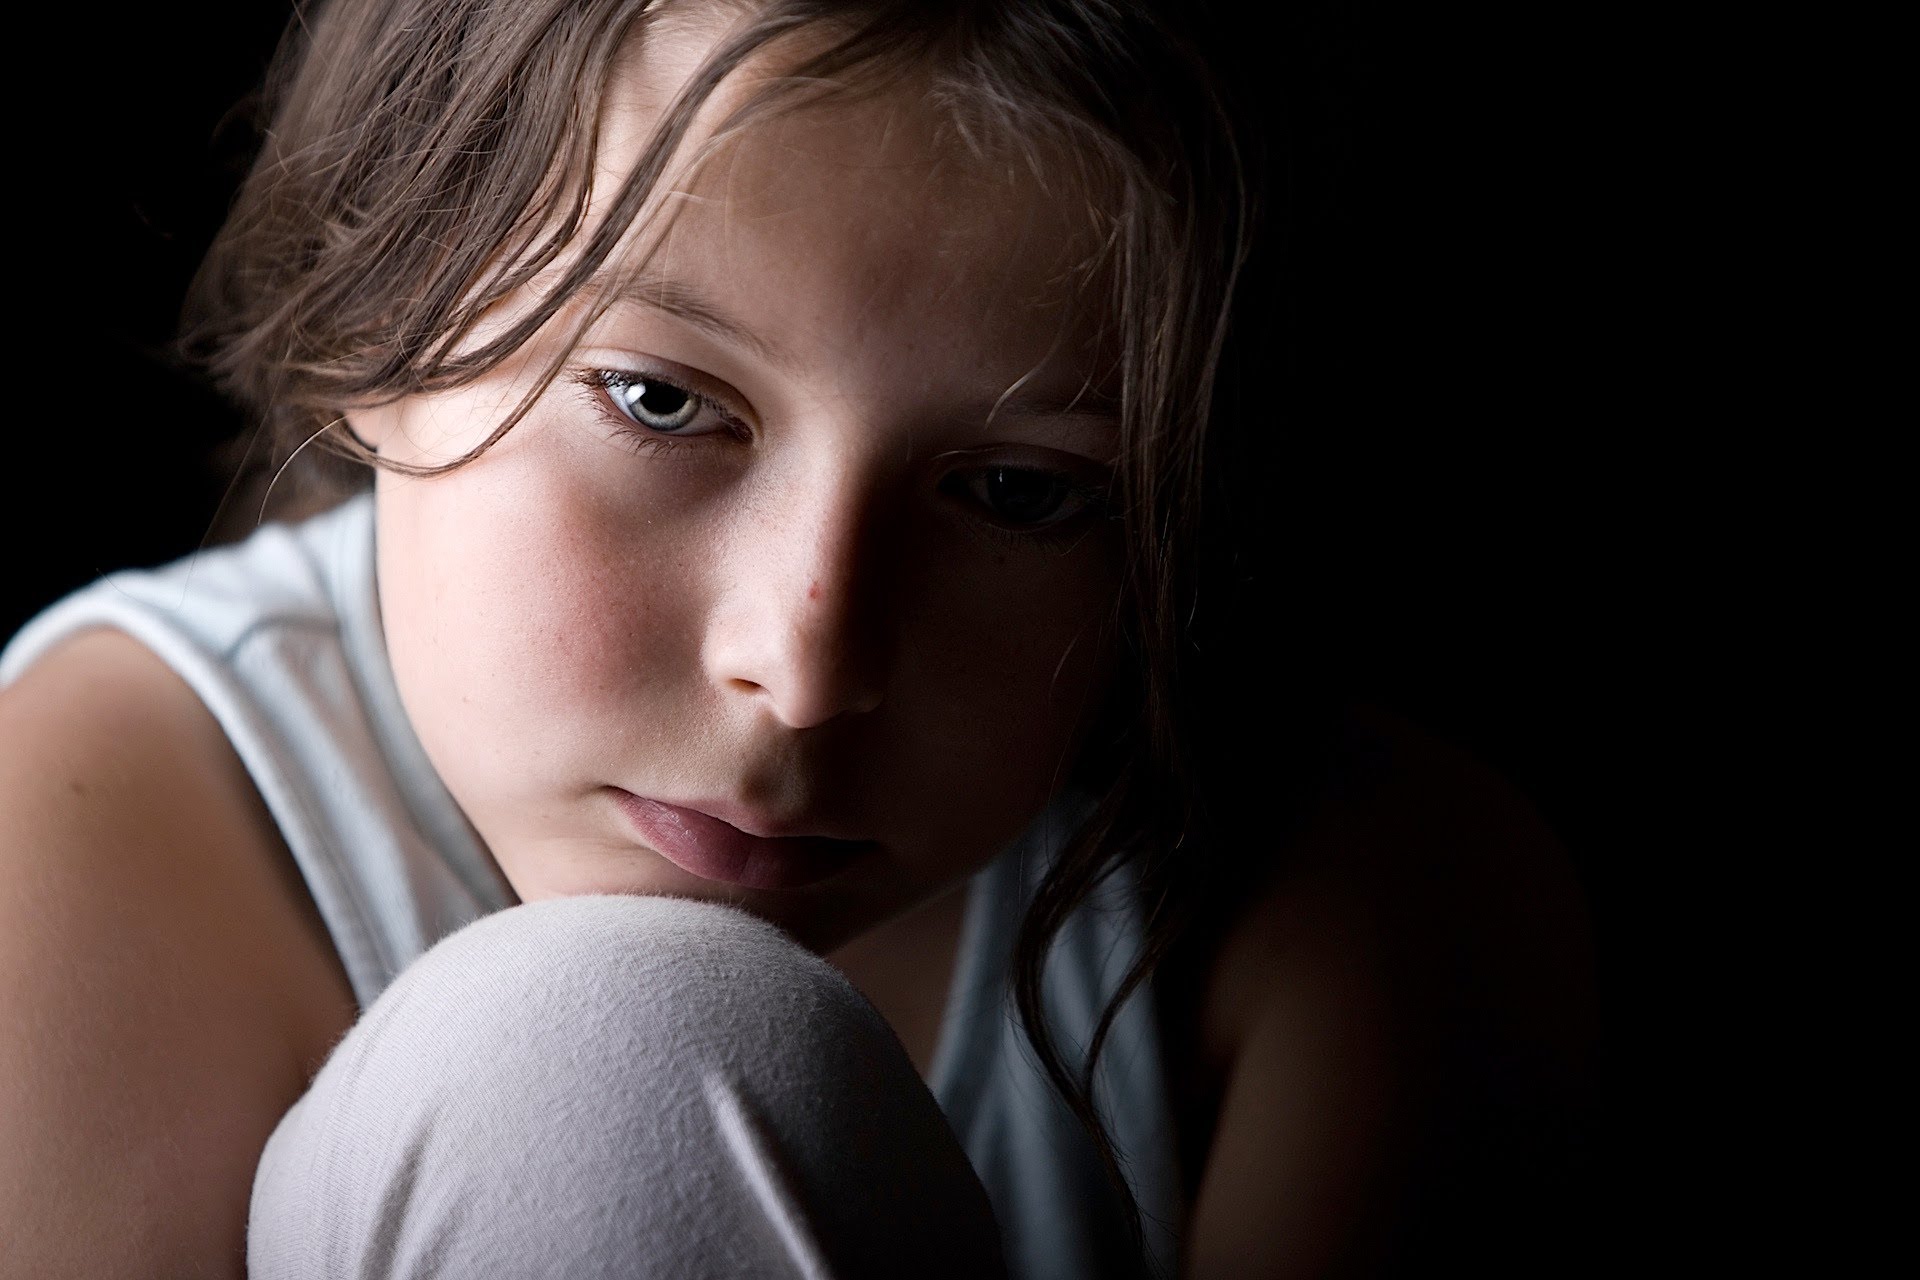 Δραματική αύξηση των ψυχικών προβλημάτων στα παιδιά και τους εφήβους